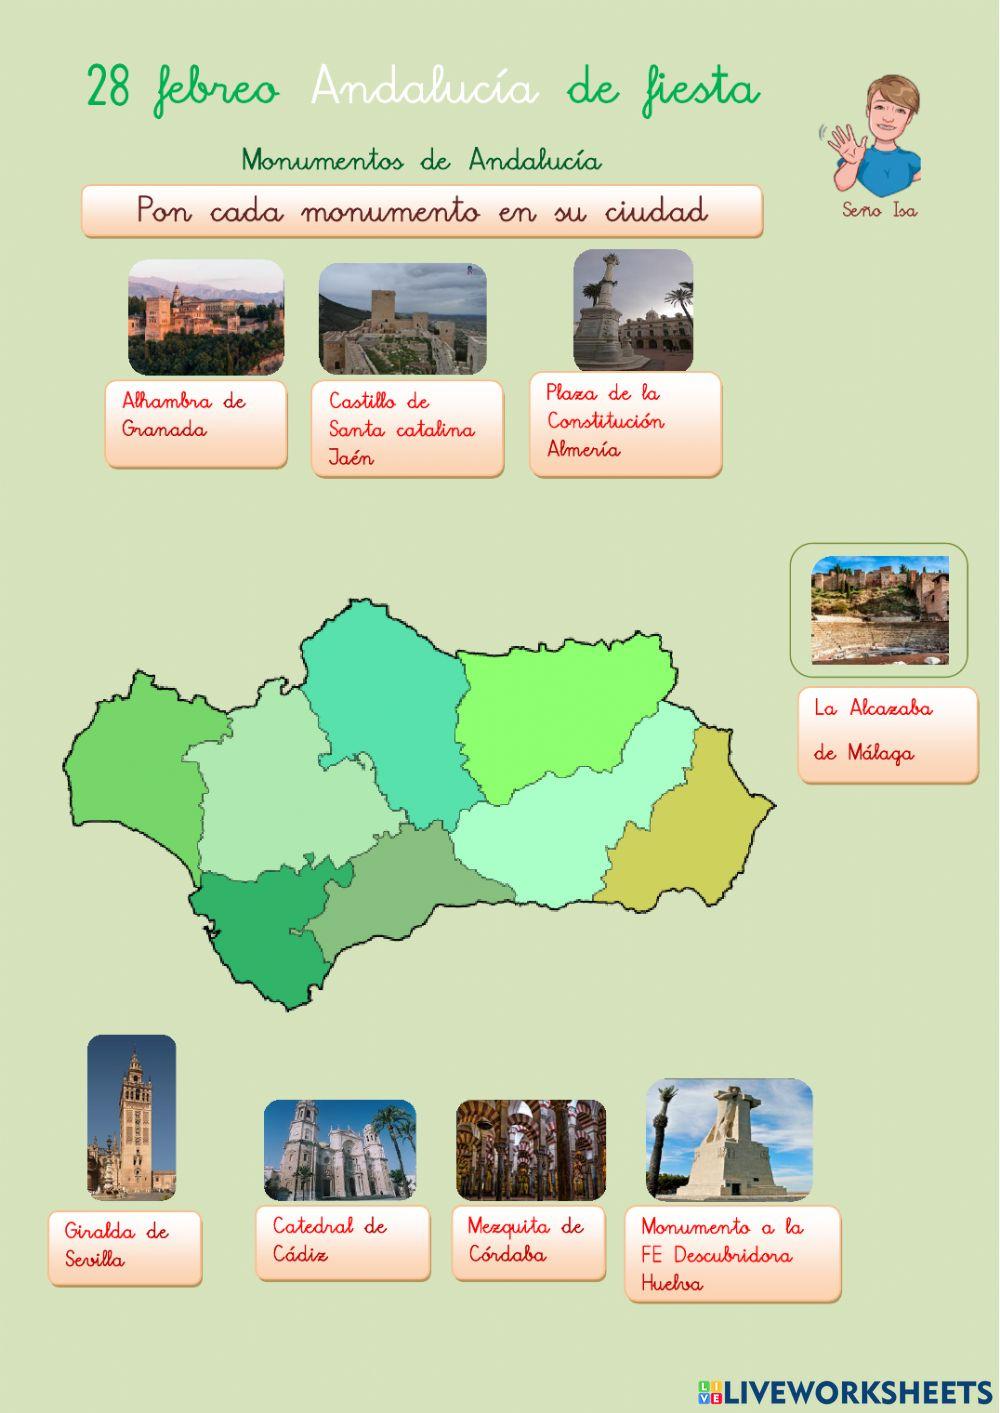 Monumentos de Andalucía